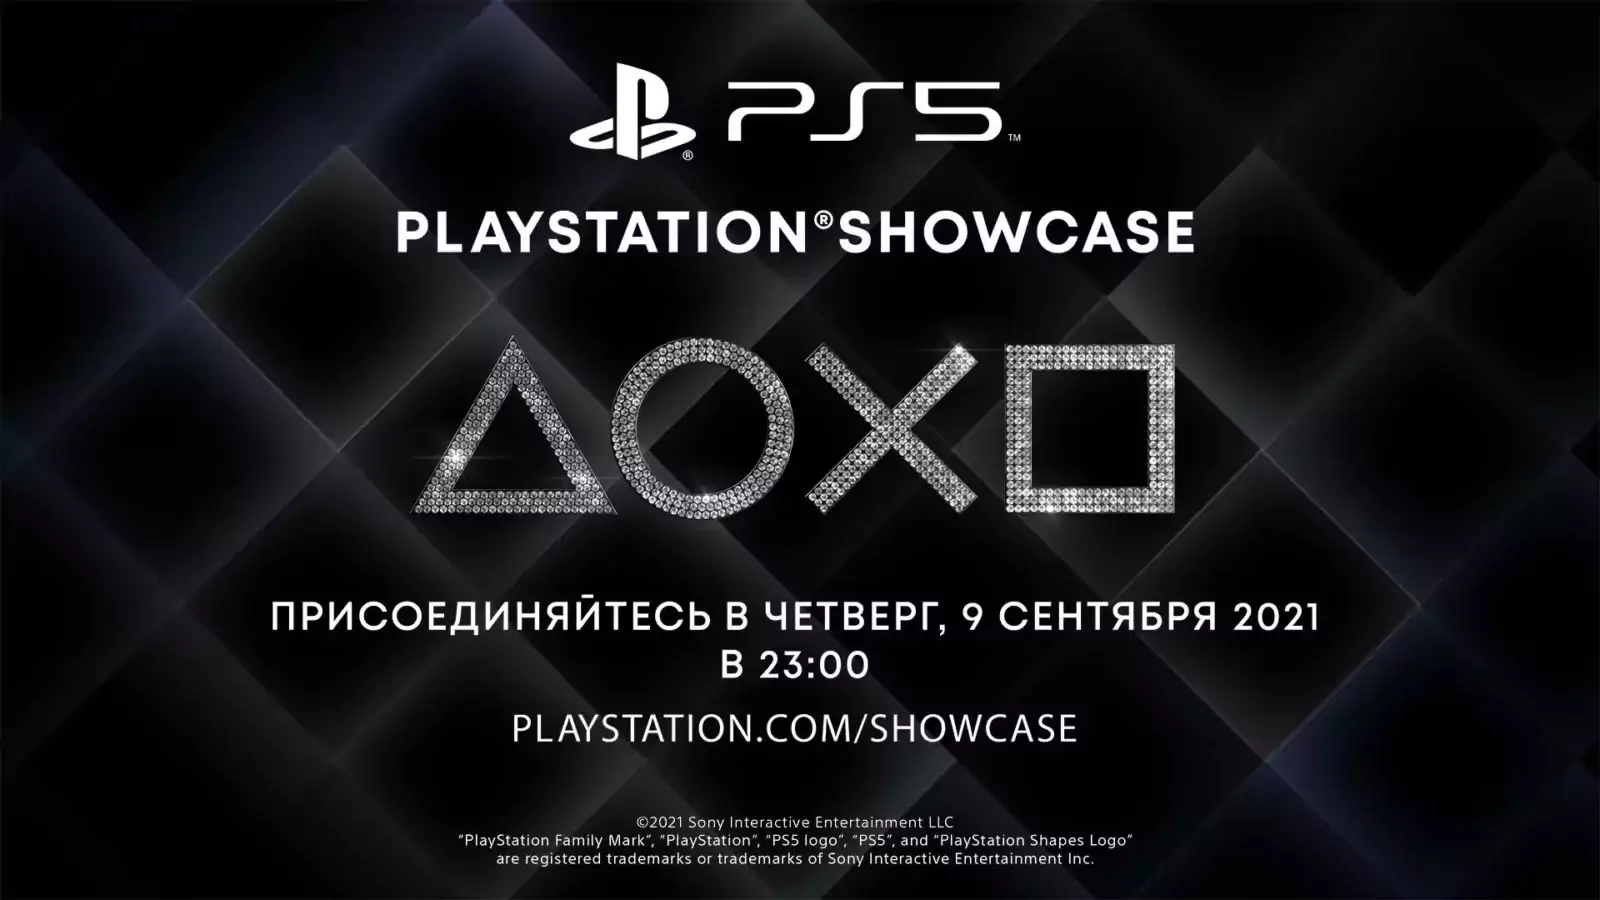 Презентация PlayStation Showcase 2021 состоится 9 сентября ()